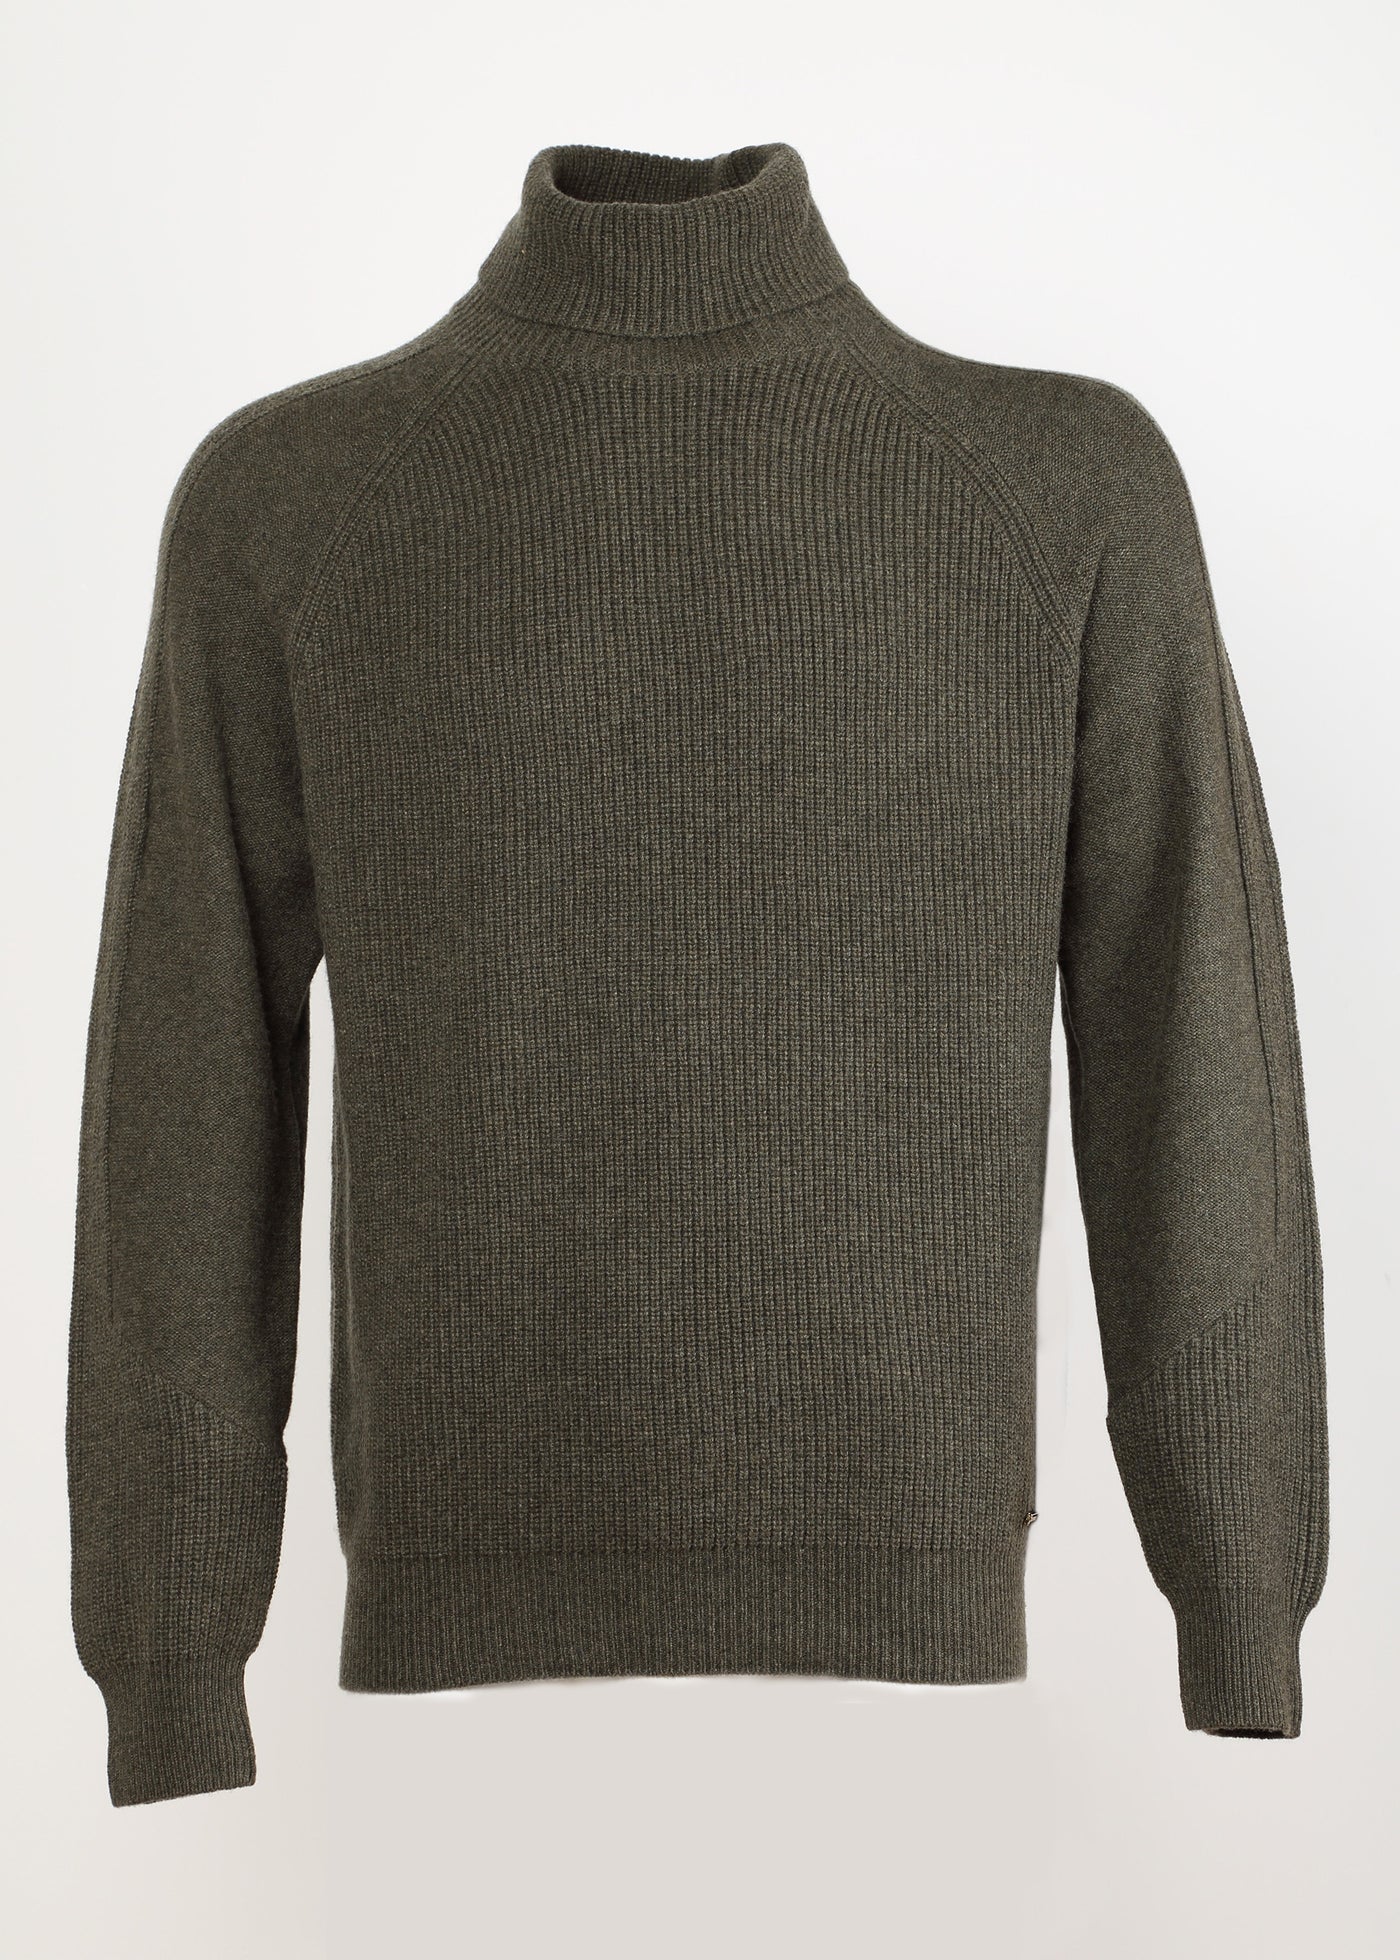 Men's Turtleneck Cashmere Pullover